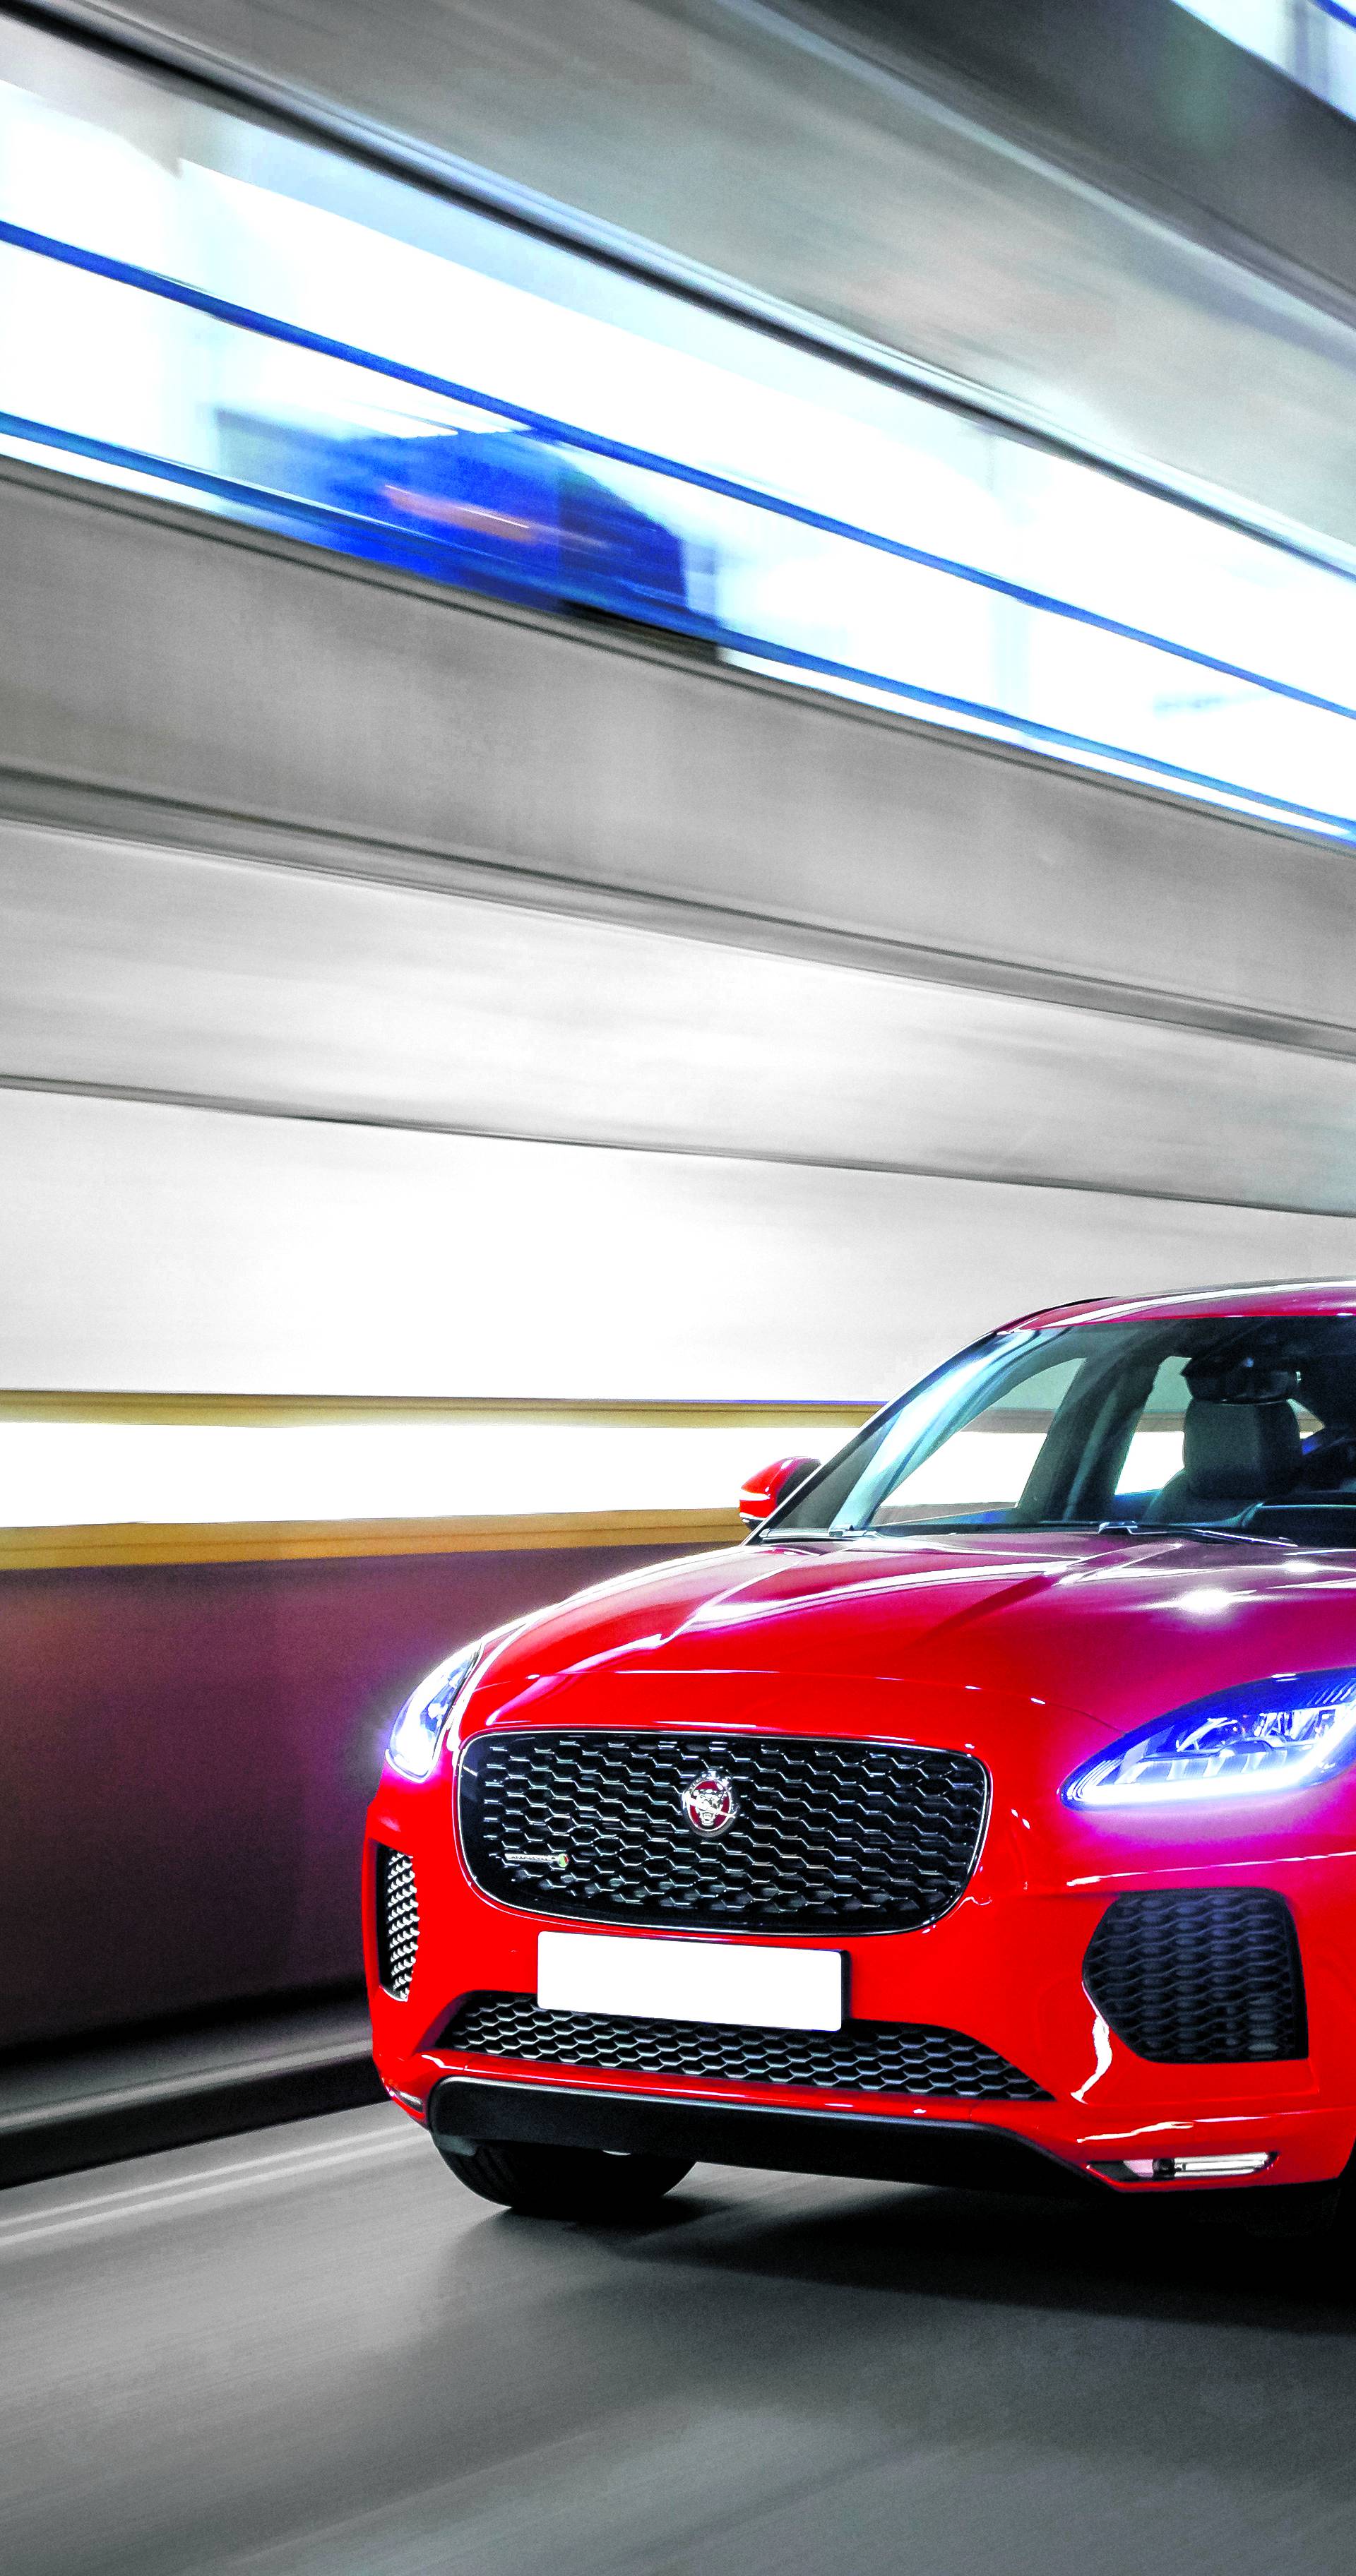 Nevjerojatna prilika: Osvojite luksuzni SUV Jaguar E-Pace!